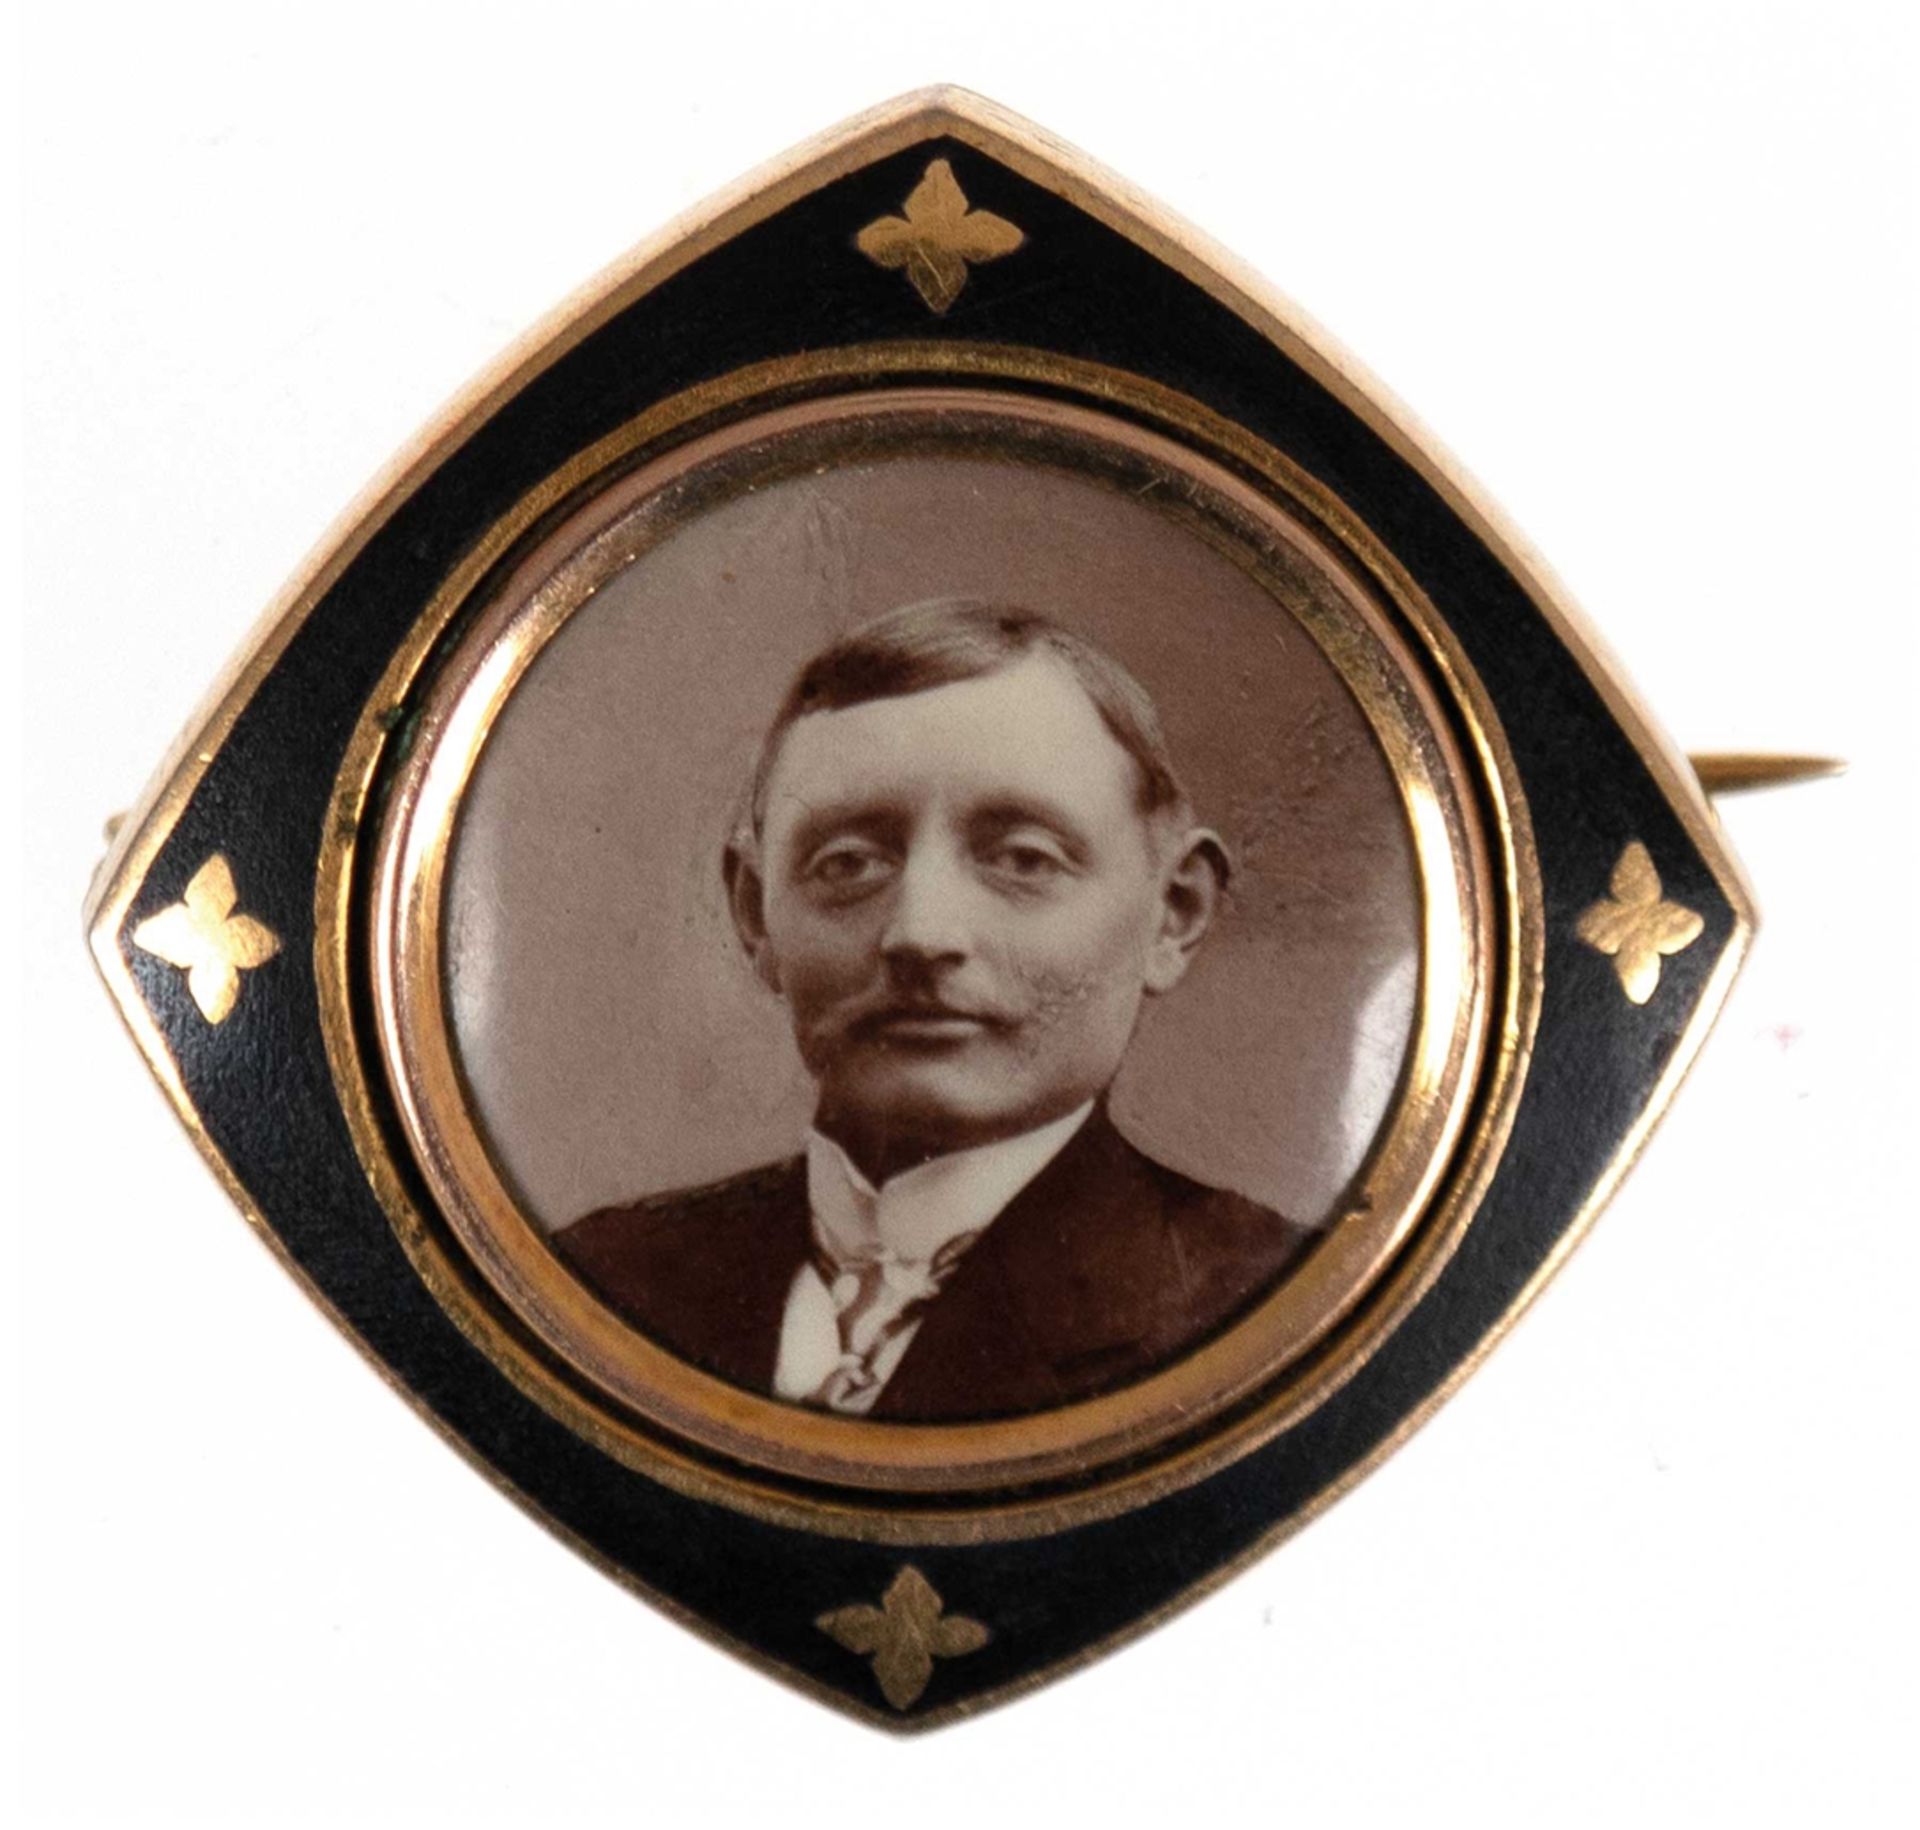 Jugendstil-Fotobrosche um 1900, Golddouble, schwarzer Rahmen